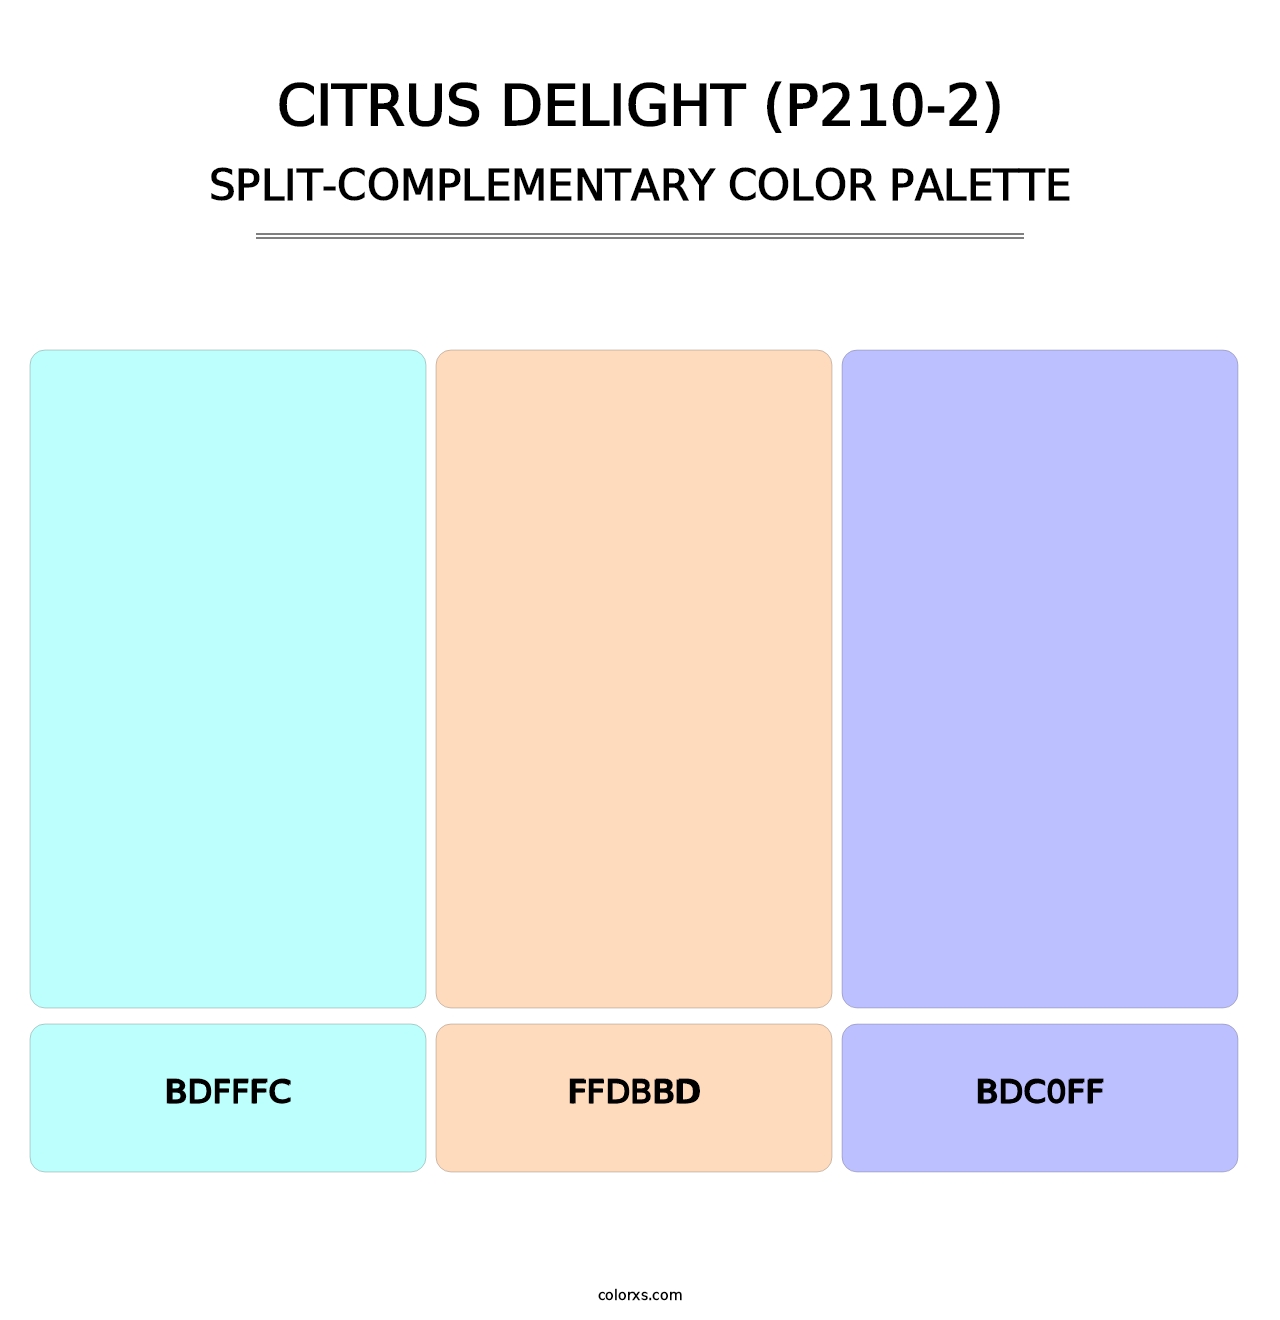 Citrus Delight (P210-2) - Split-Complementary Color Palette